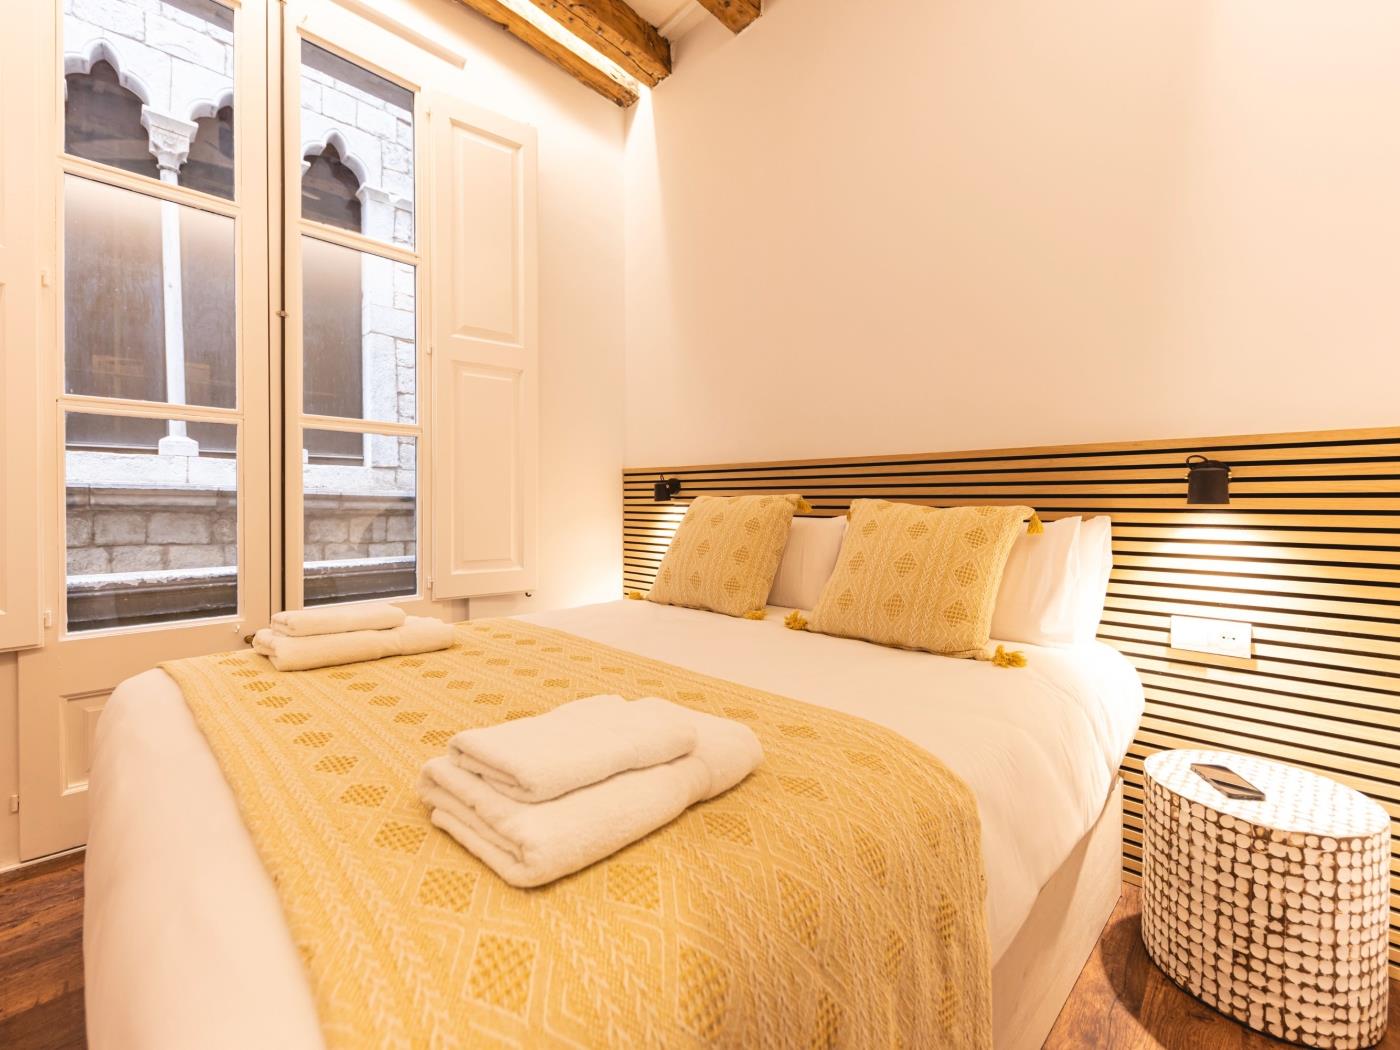 Bravissimo Ferreries, piso único de 3 dormitorios en Girona